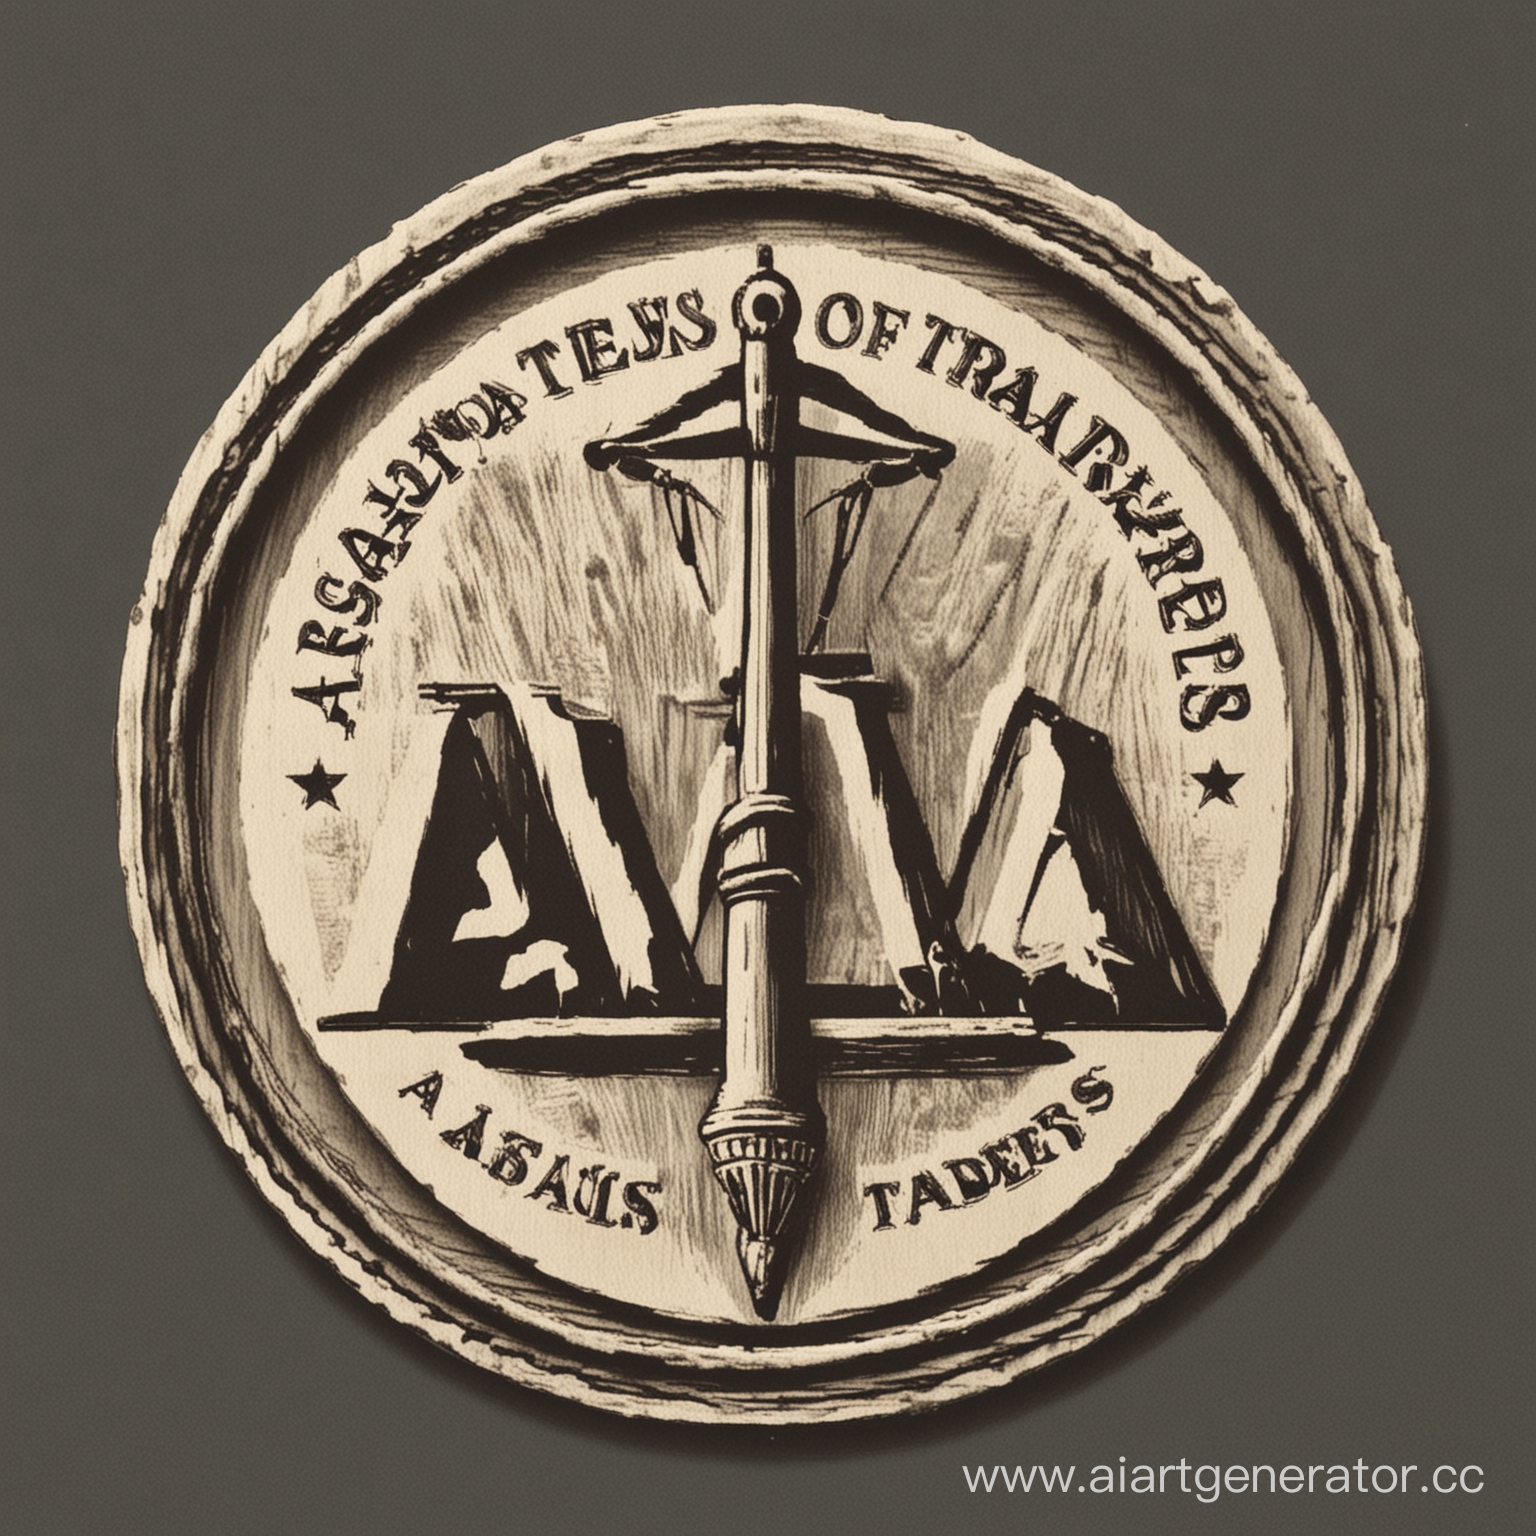 Логотип Ассоциации Торговцев.

